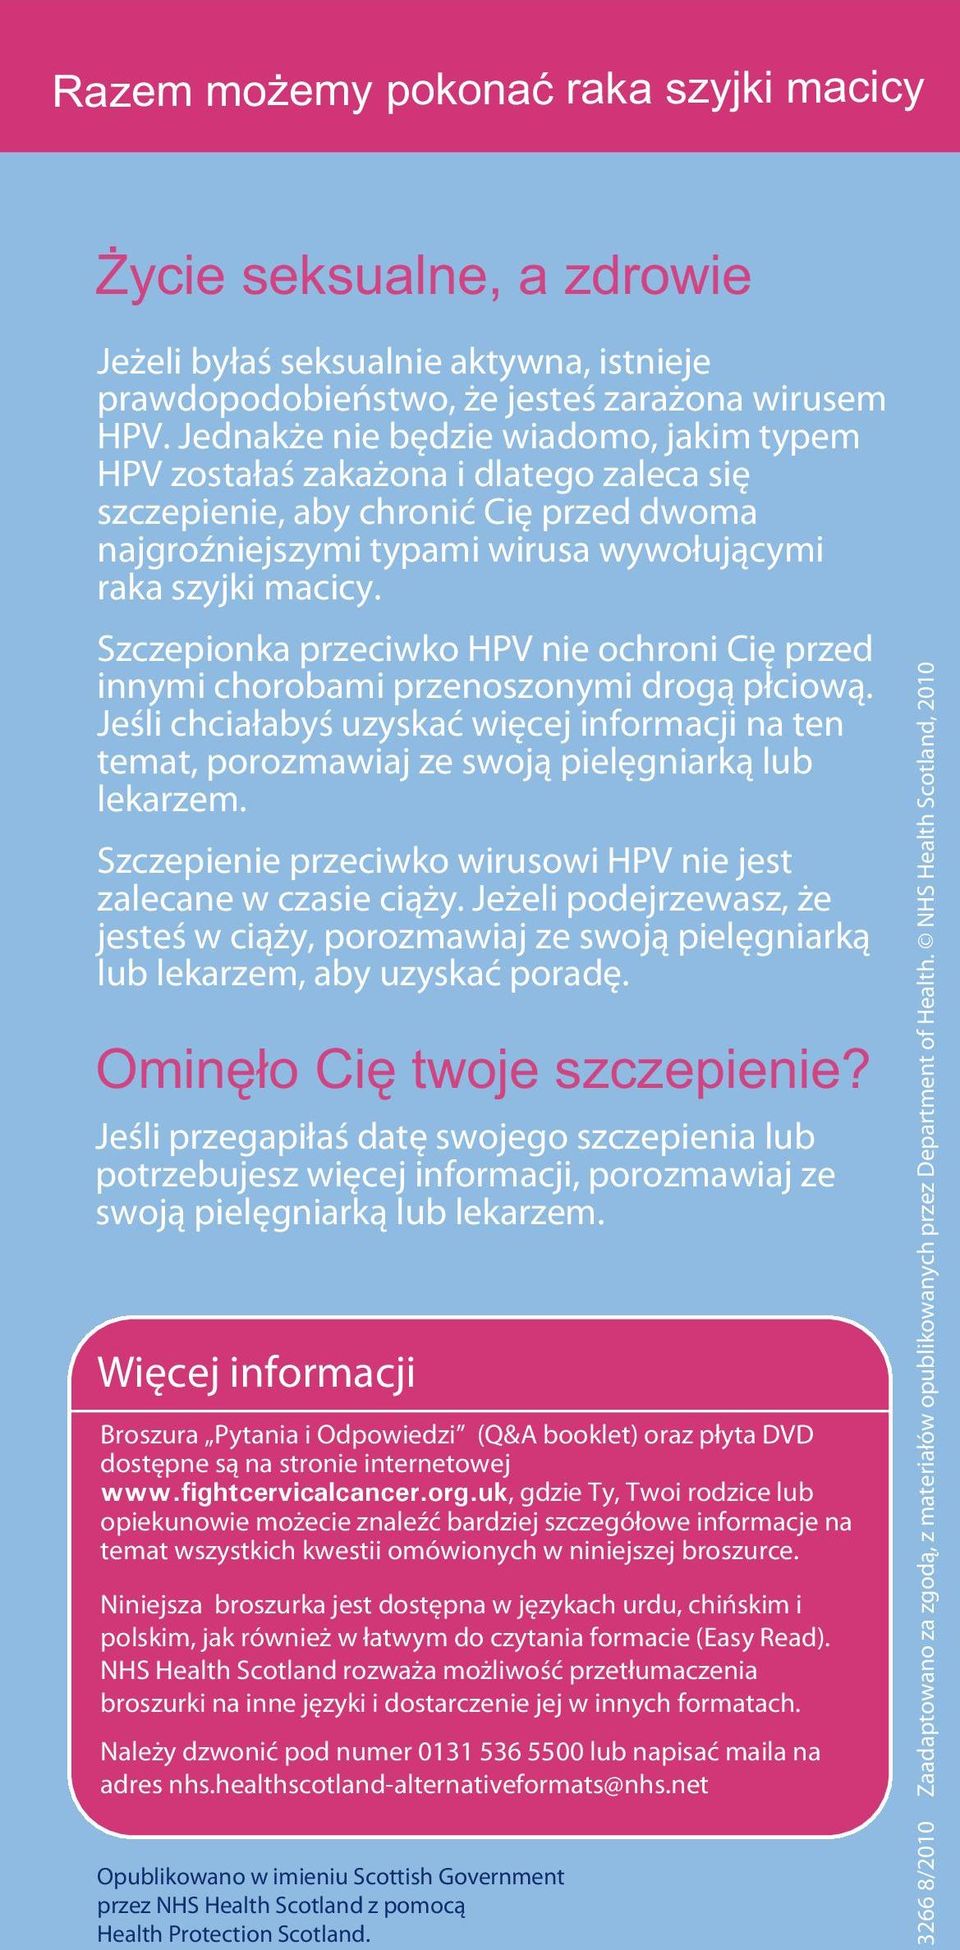 Szczepionka przeciwko HPV nie ochroni Cię przed innymi chorobami przenoszonymi drogą płciową. Jeśli chciałabyś uzyskać więcej informacji na ten temat, porozmawiaj ze swoją pielęgniarką lub lekarzem.